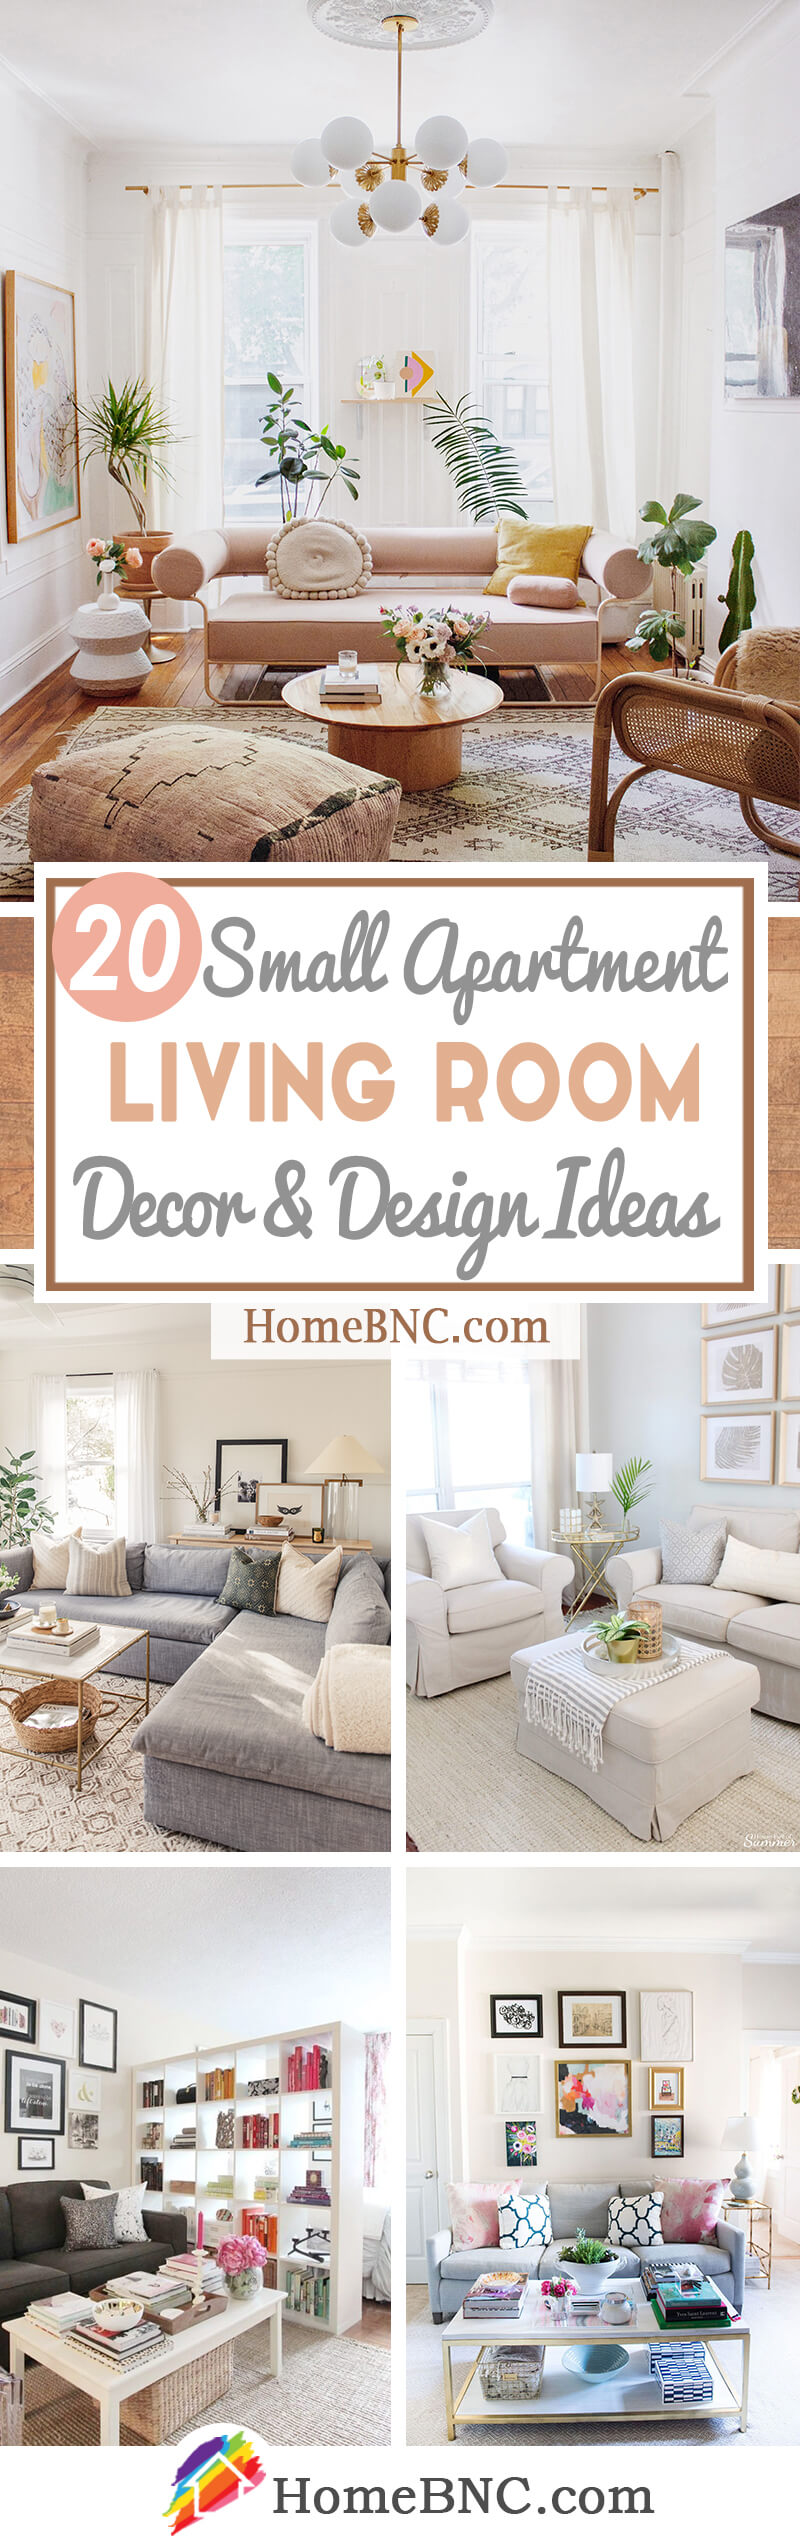 small apartment living room decor ideas pinterest share homebnc v20 ...